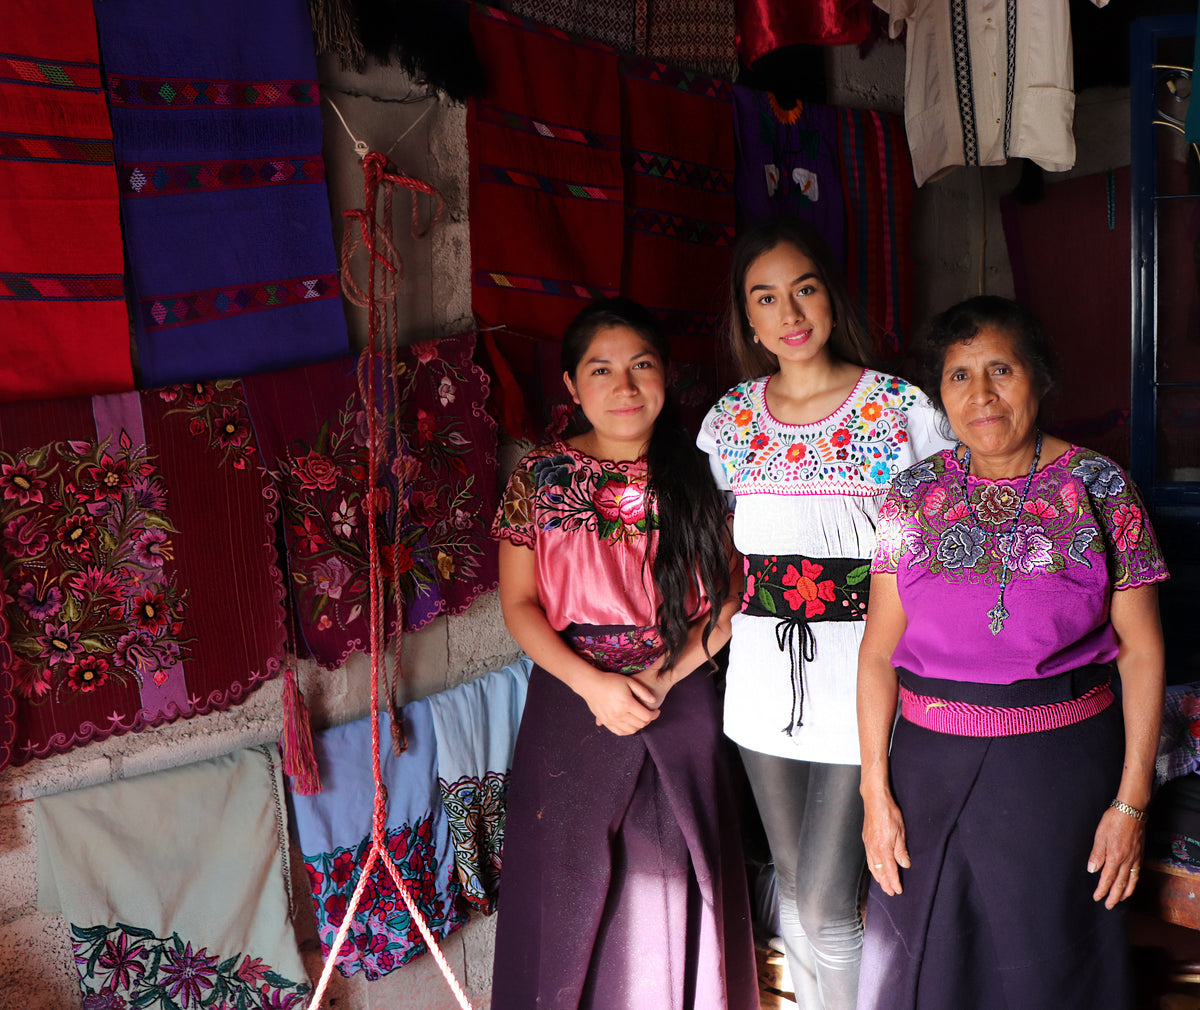 Meet the Artisans - Mexican Artisans